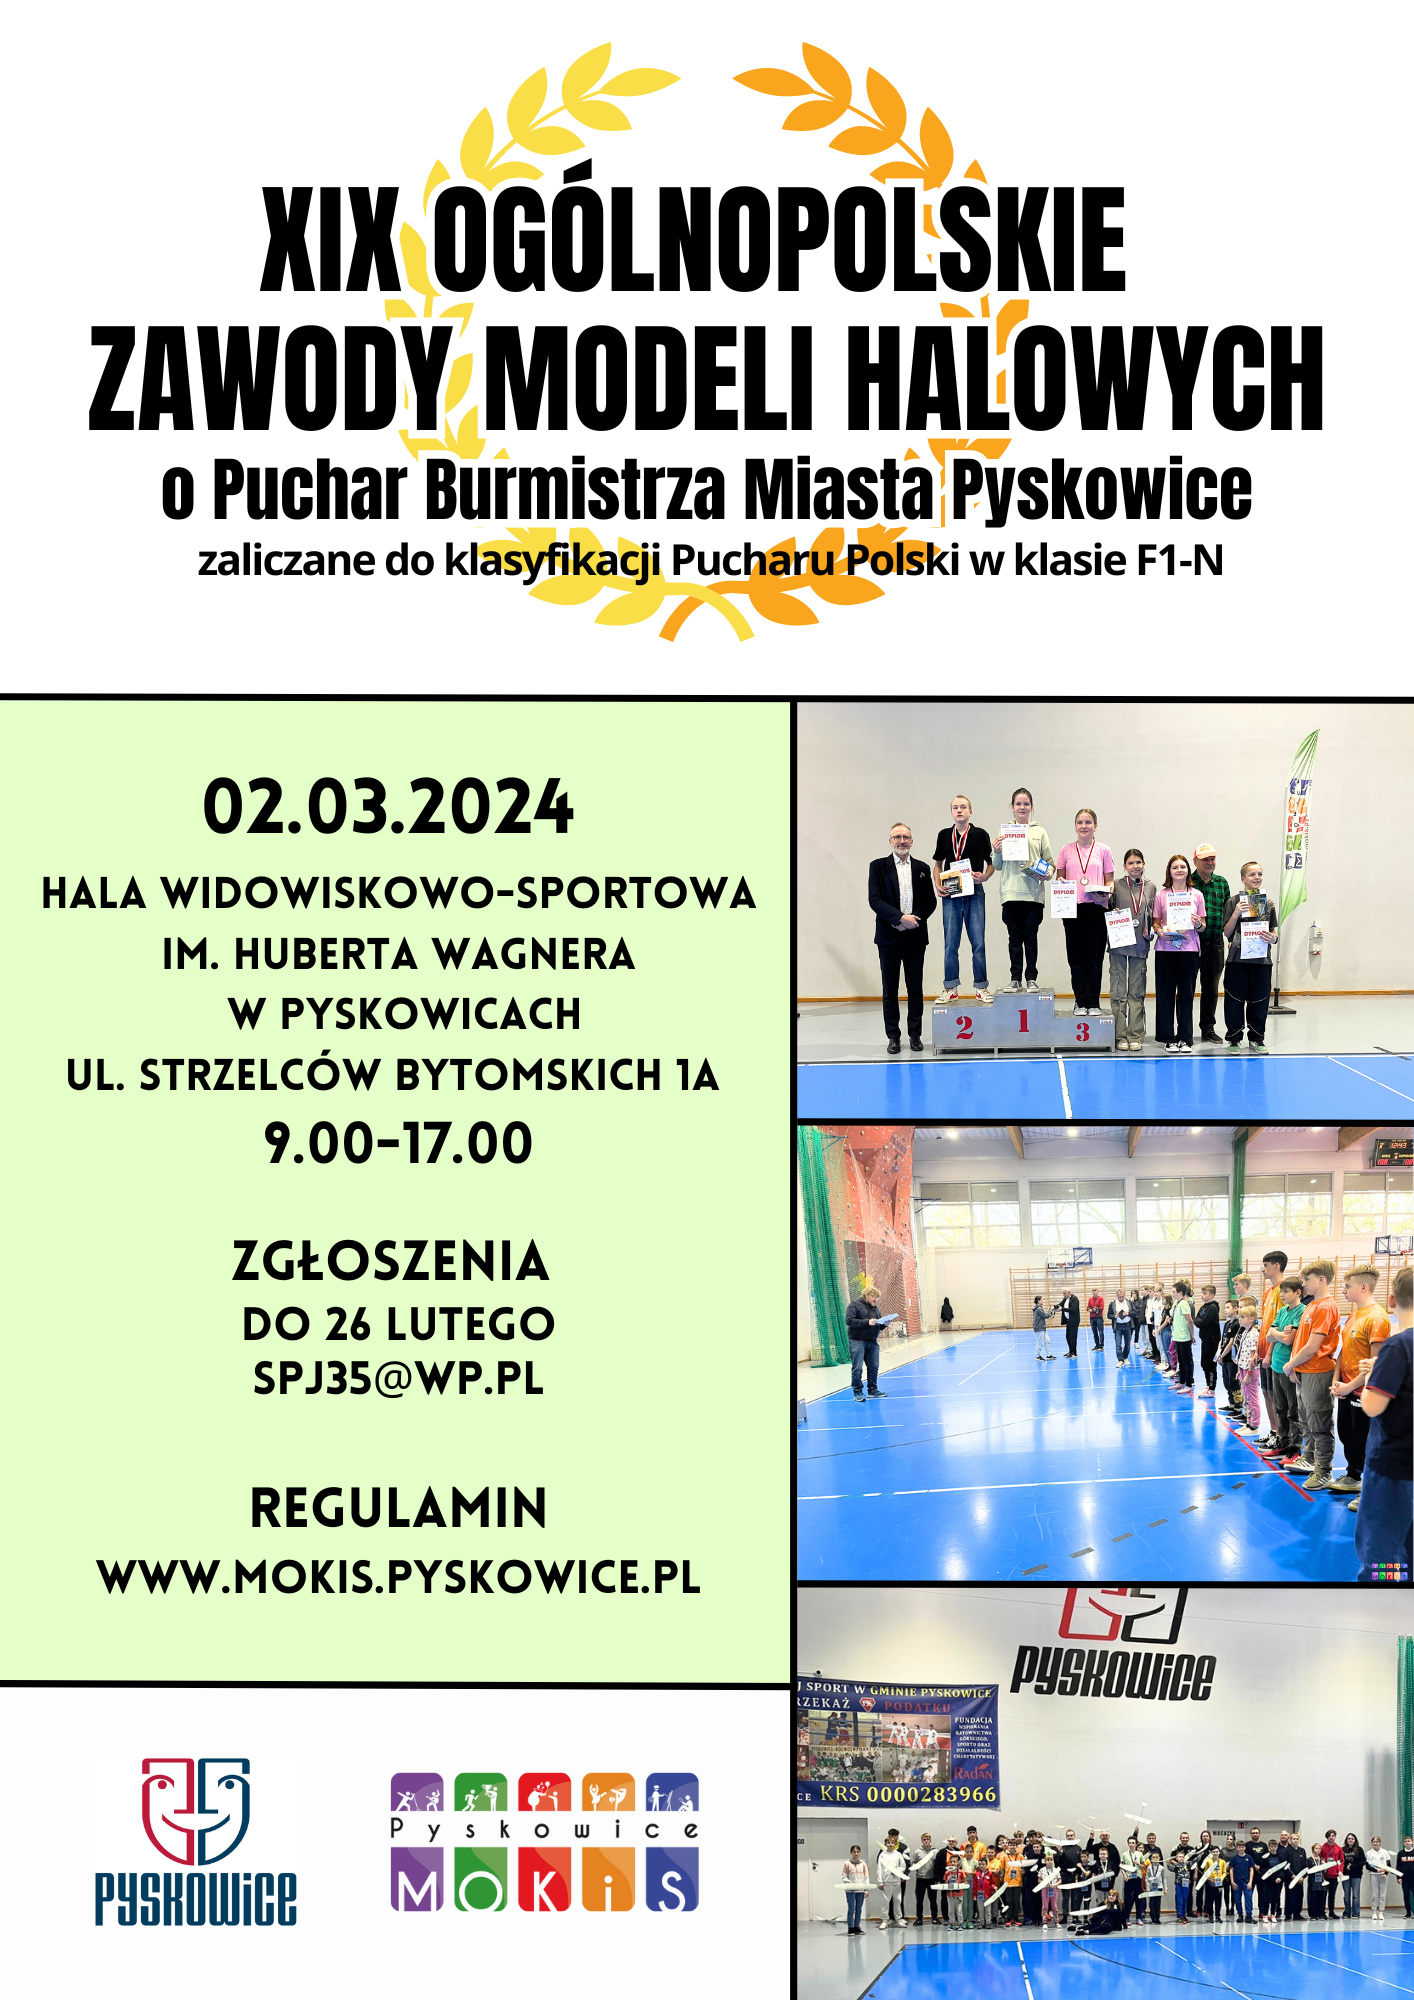 Plakat promujący XIX Ogólnopolskie Zawody Modeli Halowych o Puchar Burmistrza Miasta Pyskowice